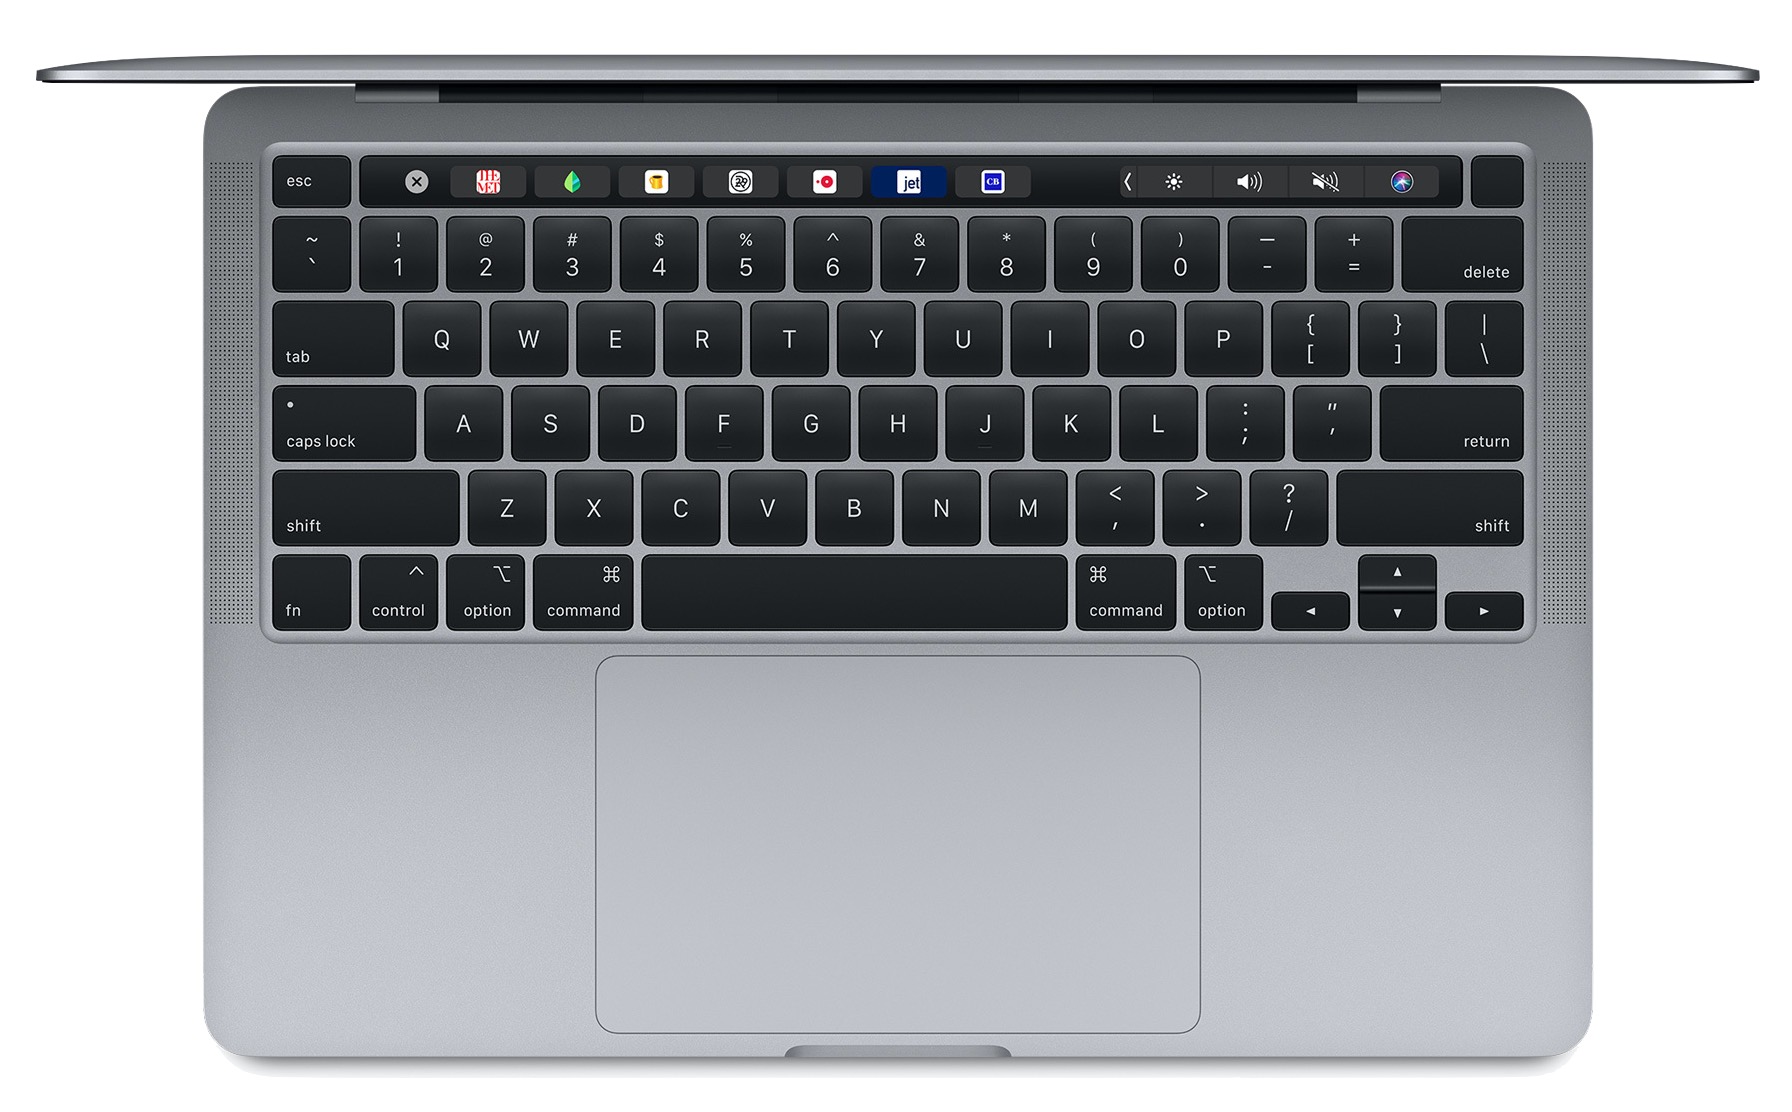 Druppelen Monnik gazon 1512: Nieuwe 13-inch MacBook Pro, COVID-19 testlocaties in Apple Kaarten,  Apples bewogen tweede kwartaal 2020, PDFpen 12, Magic Keyboard voor iPad -  TidBITS